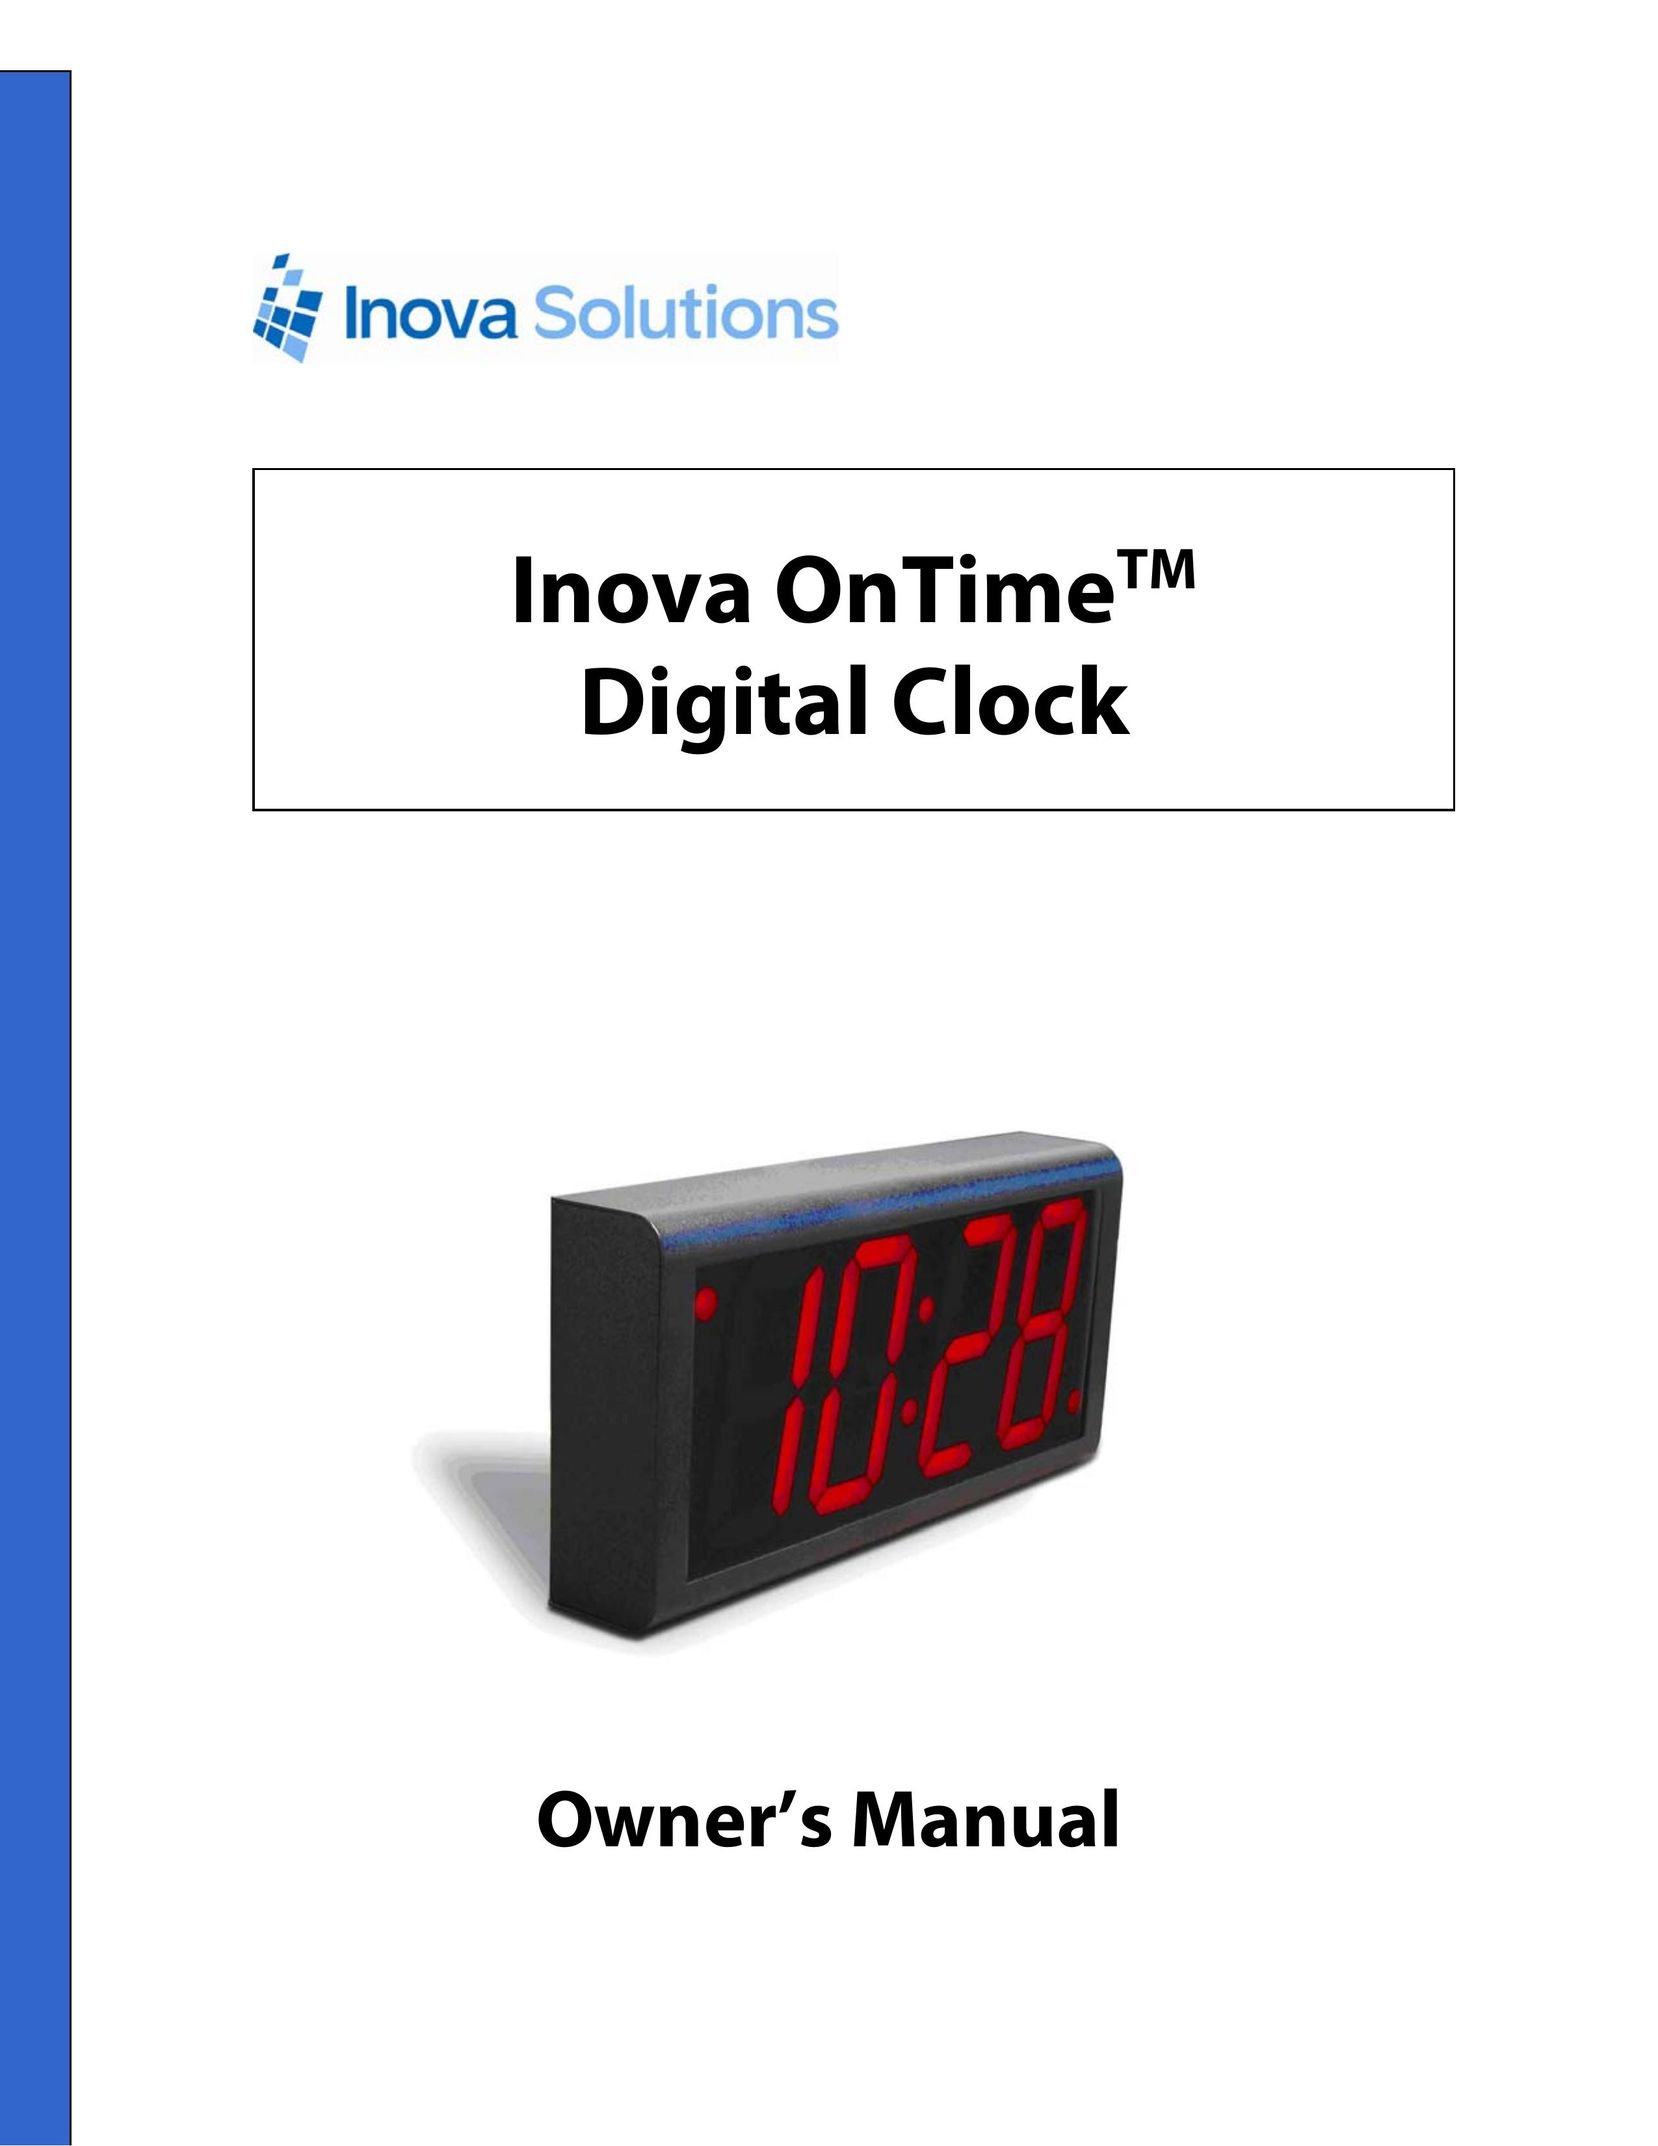 Inova OnTimeTM Clock User Manual